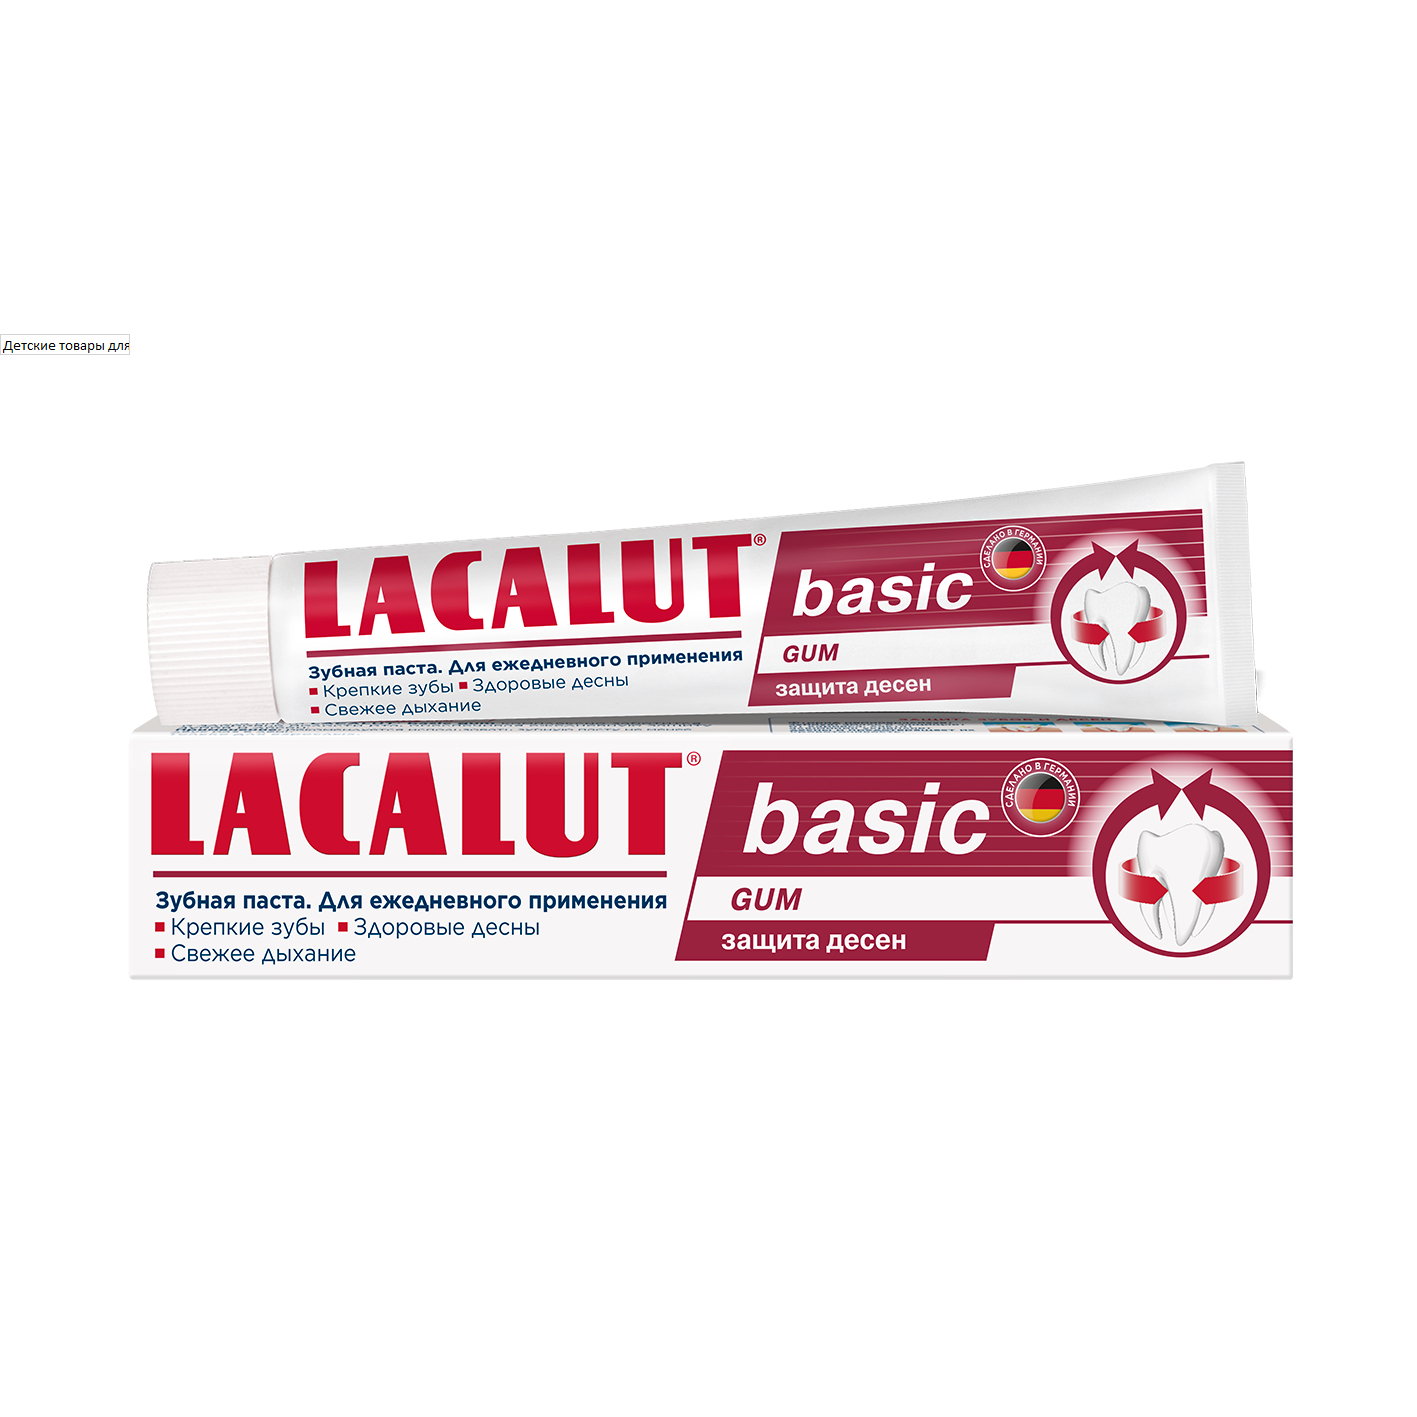 Зубная паста  Lacalut basic gum 75 мл menzerna 22930 260 870 высокоабразивн полир паста hcc 1100 – heavy cut compound 1100 1кг